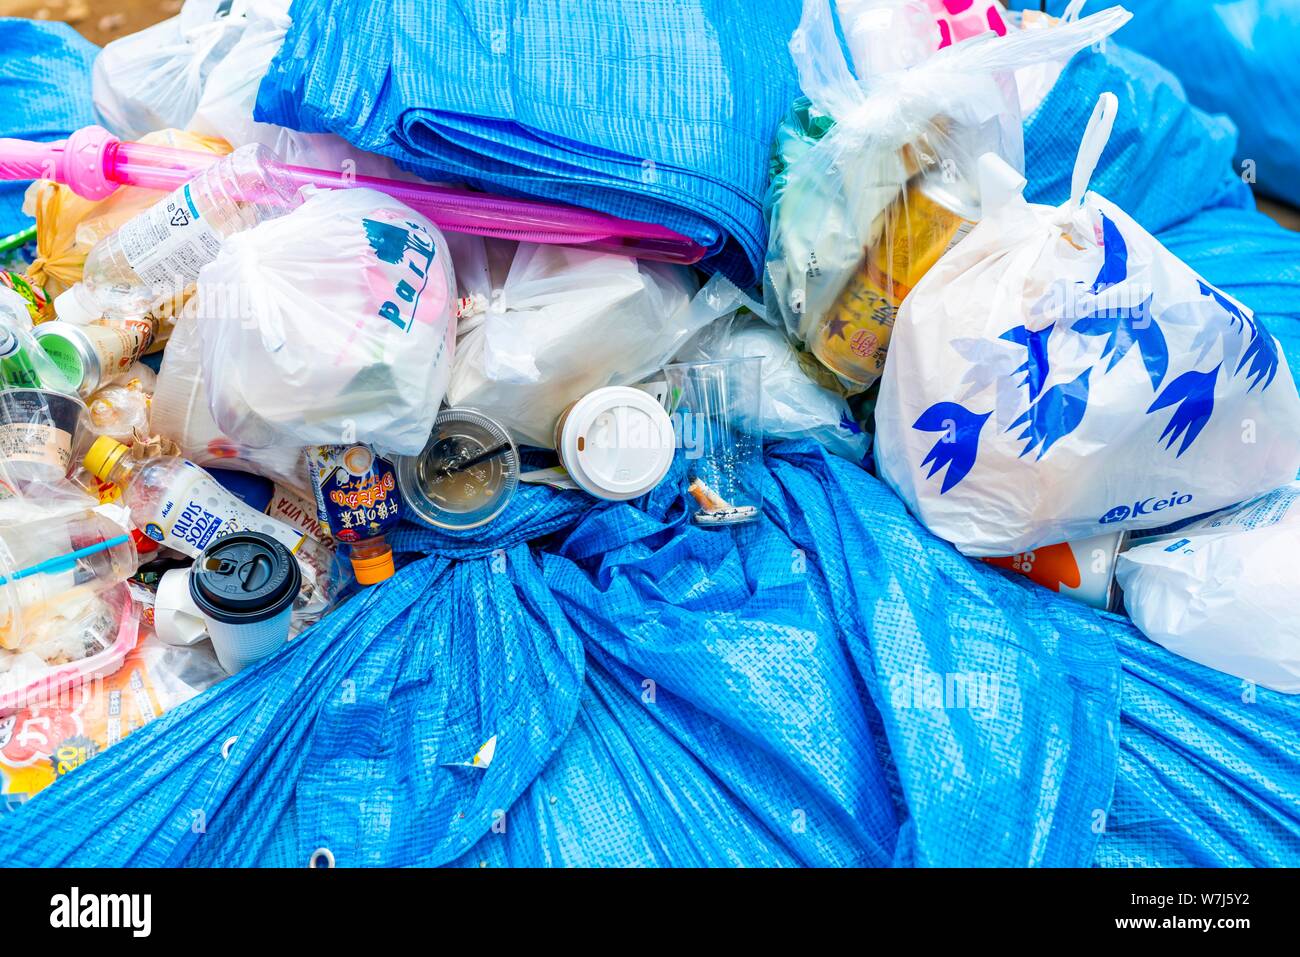 Garbage mountain, plastic garbage, plastic cups and bottles, residual garbage, Tokyo, Japan Stock Photo